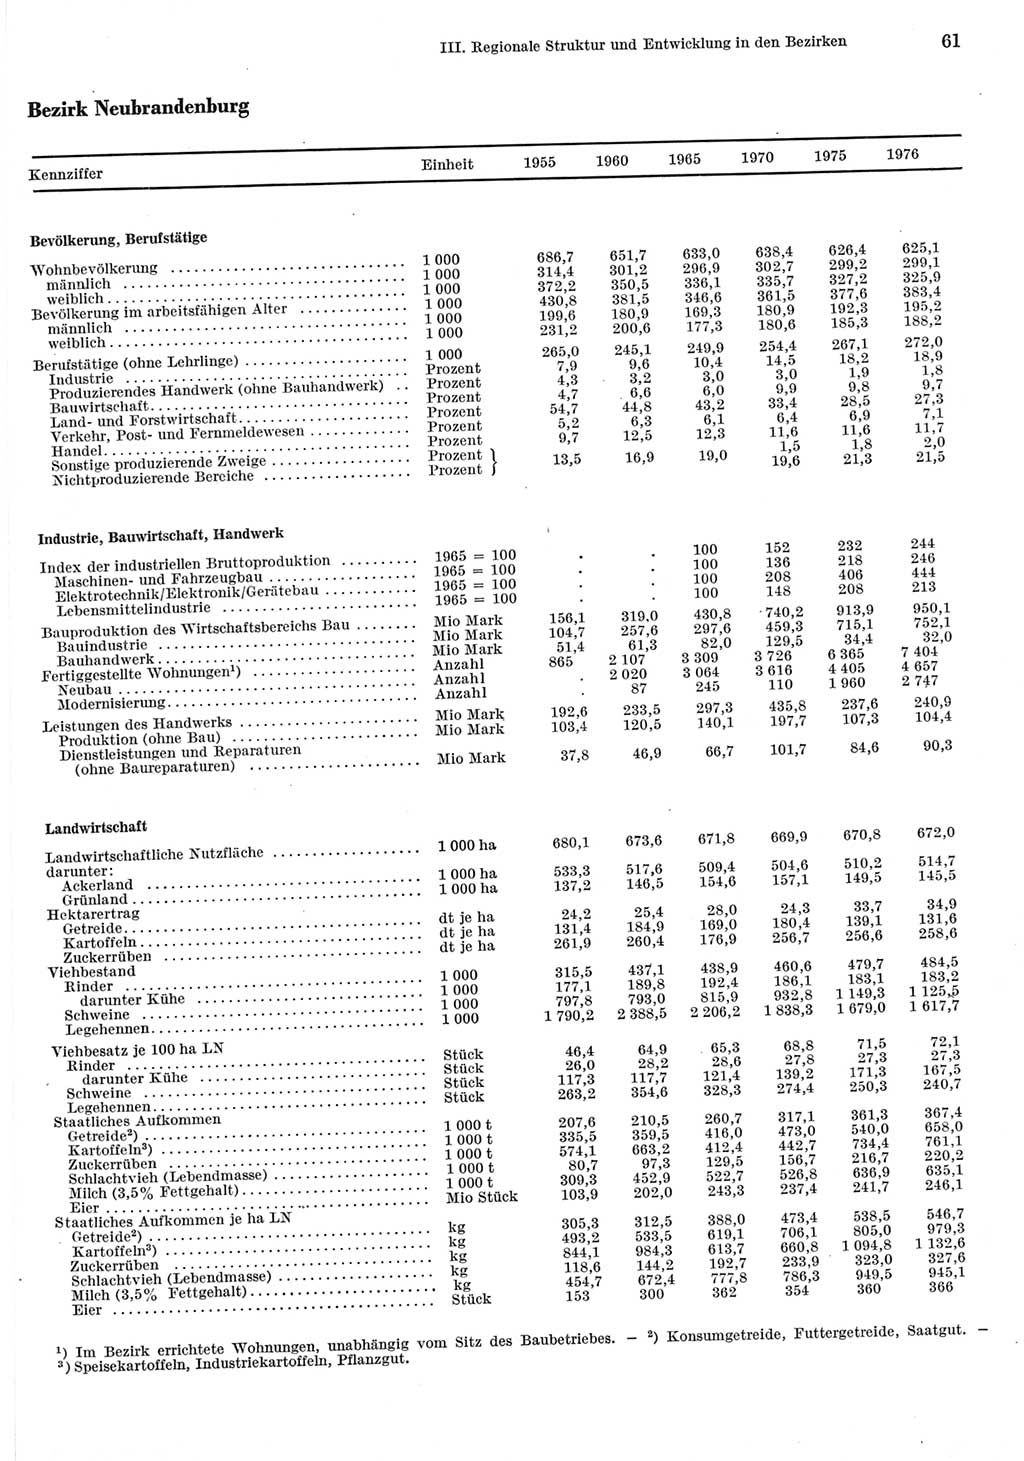 Statistisches Jahrbuch der Deutschen Demokratischen Republik (DDR) 1977, Seite 61 (Stat. Jb. DDR 1977, S. 61)